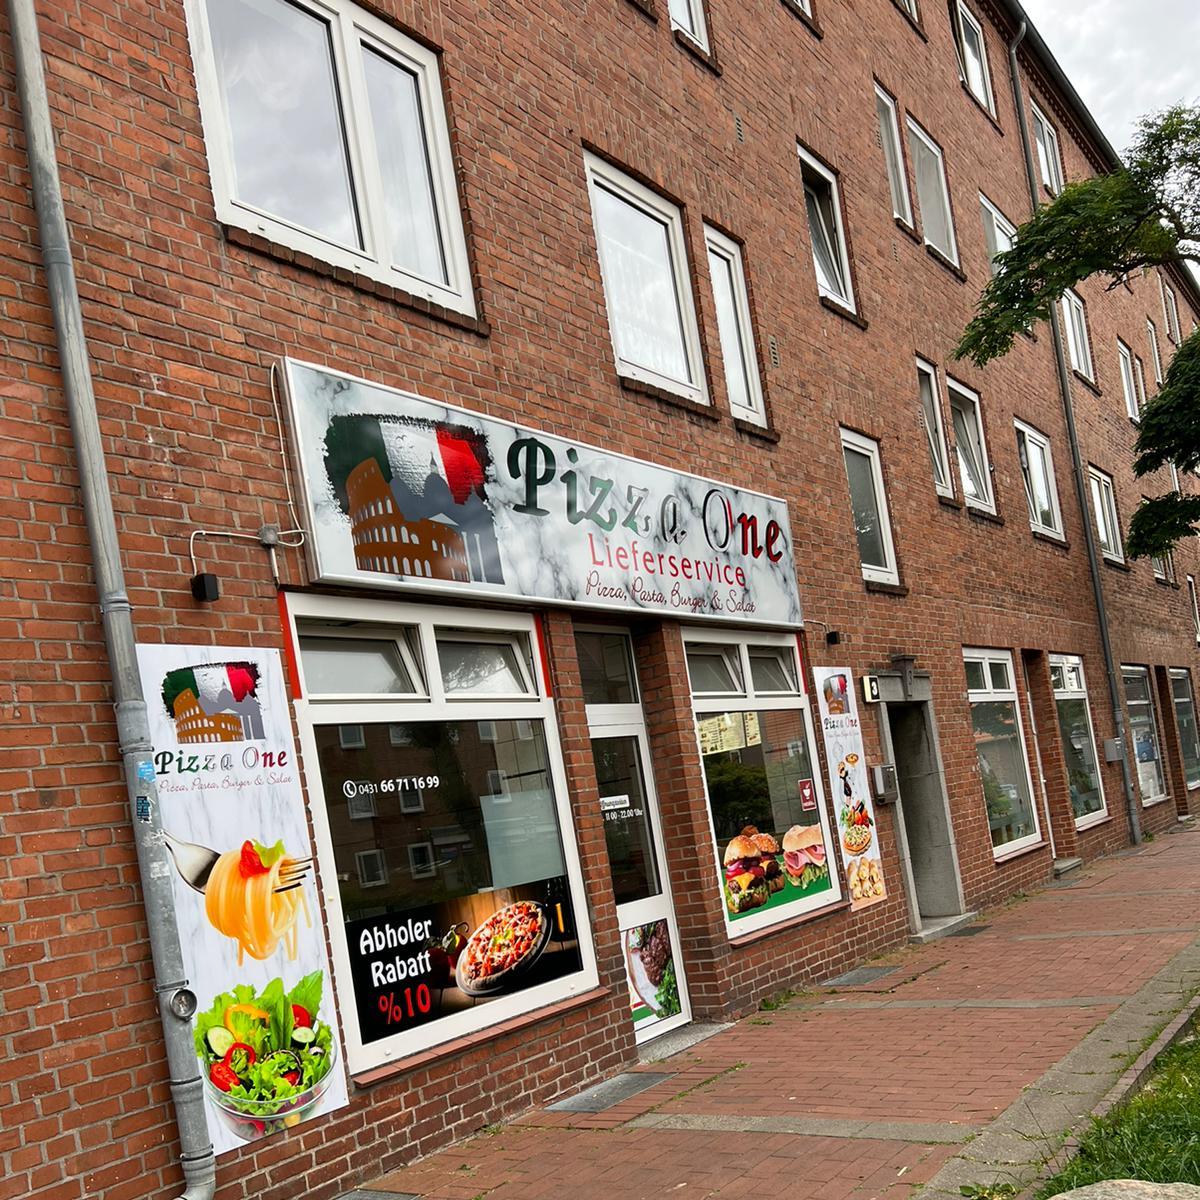 Restaurant "Pizza One" in Kiel